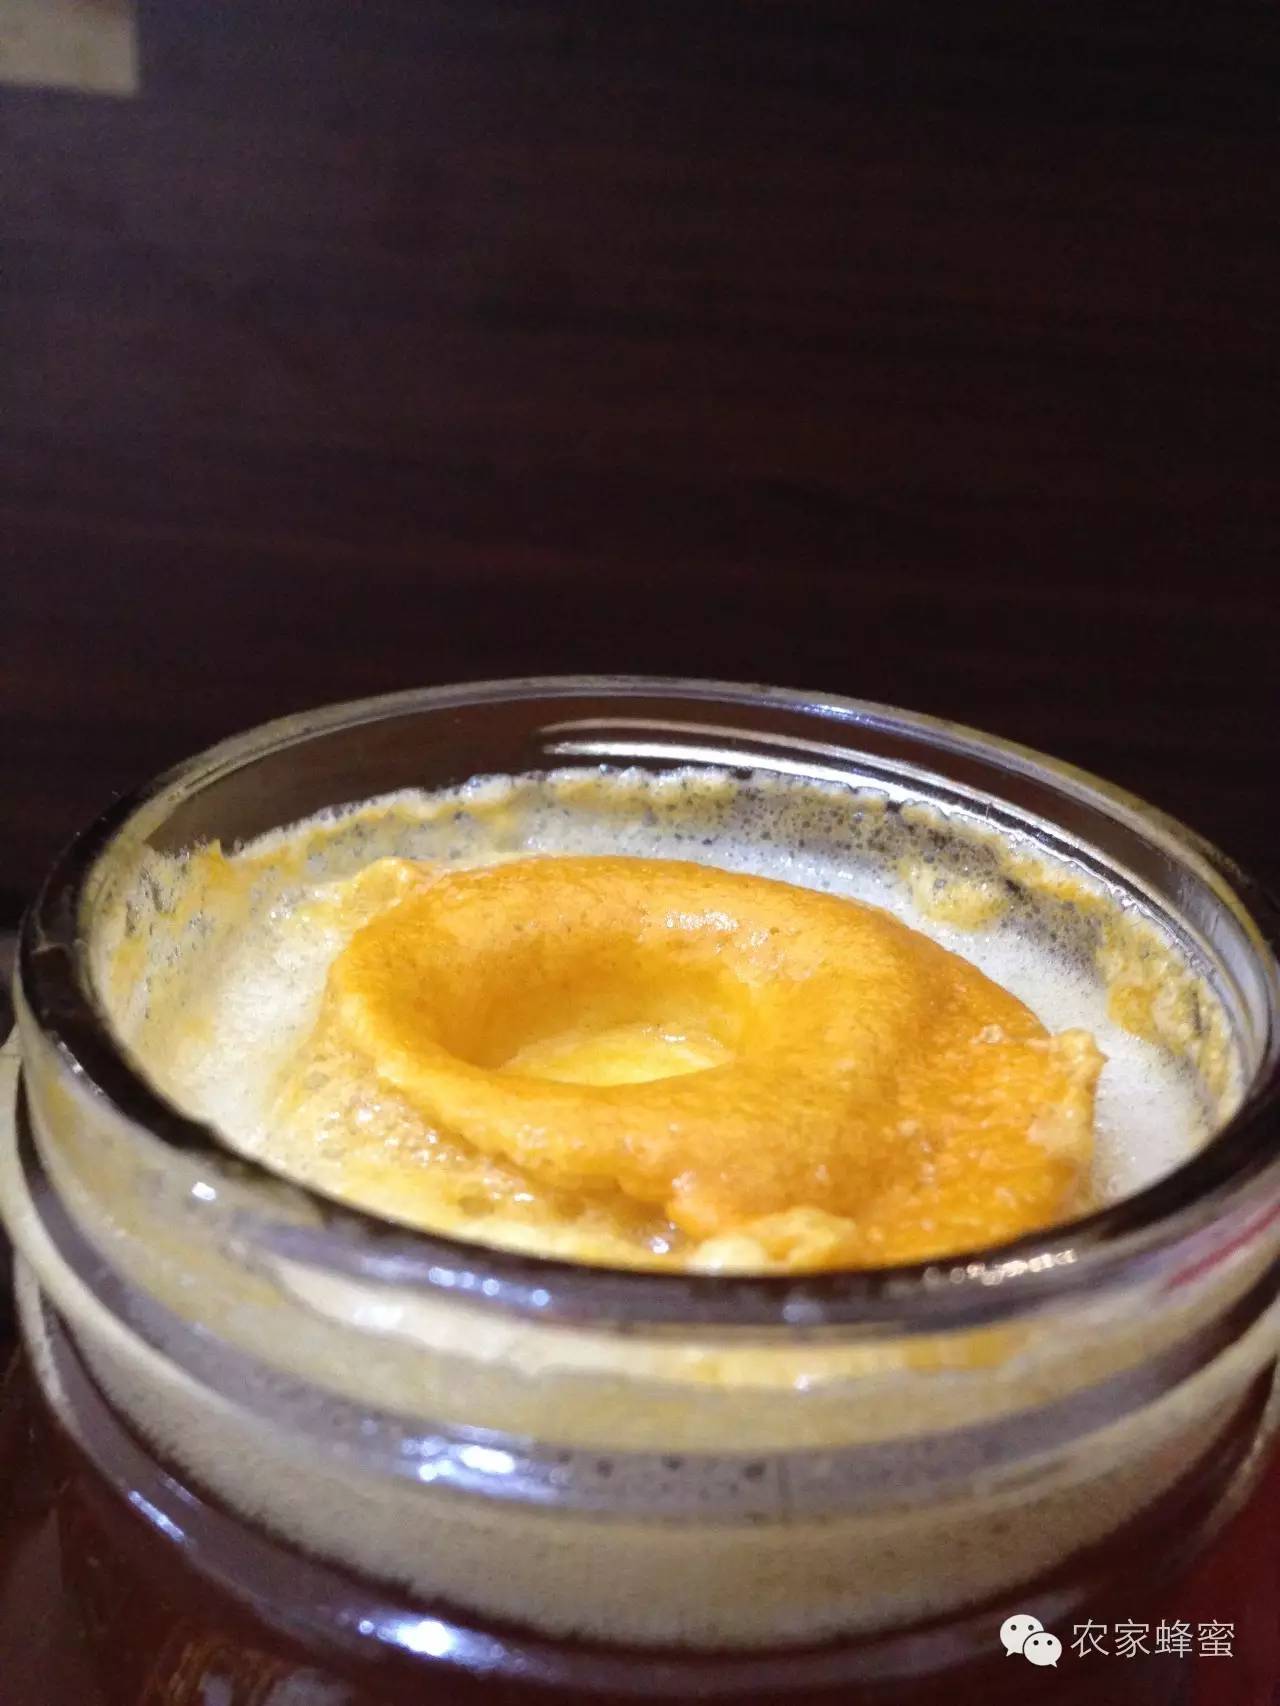 蜂蜜瓶 岩蜂蜜 红糖面膜 蜂蜜桃仁 蜂蜜配生姜的作用